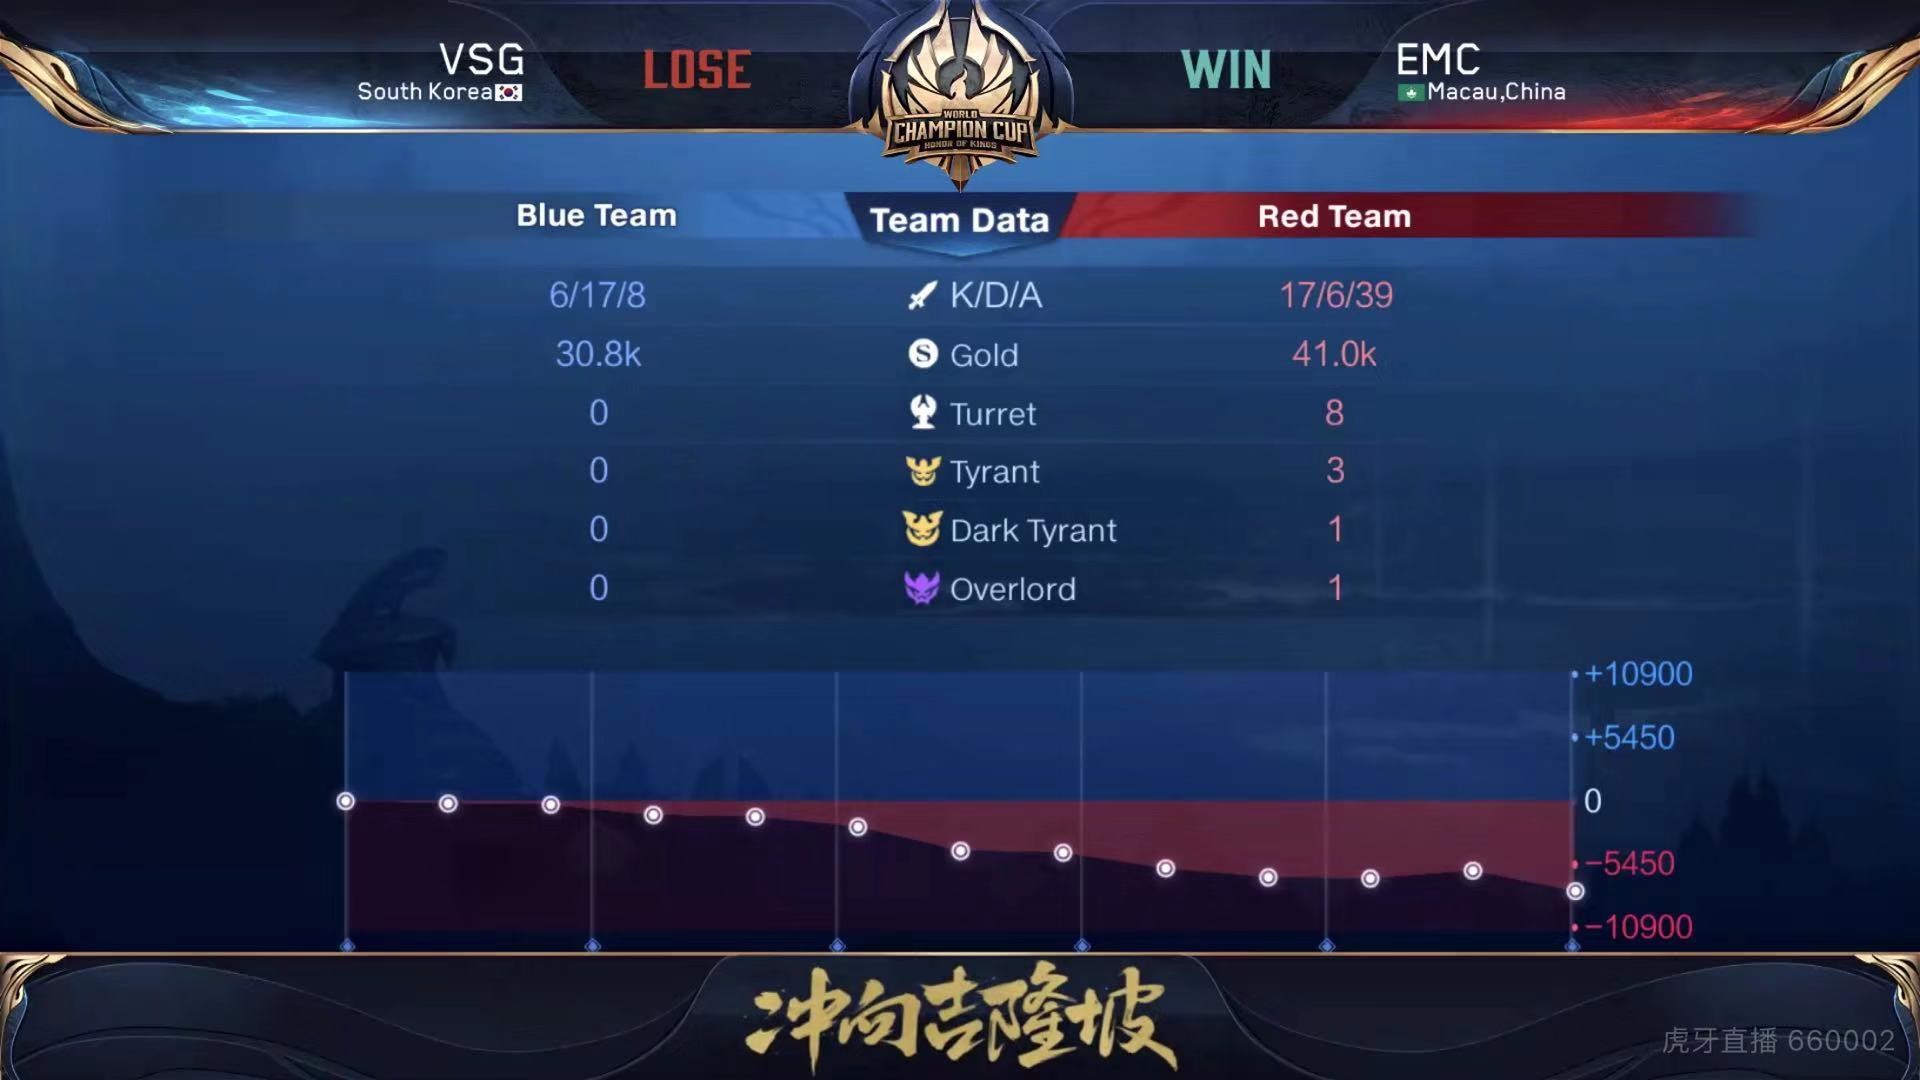 [战报] EMC连下三局战胜VSG 以一场胜利结束世冠之旅！